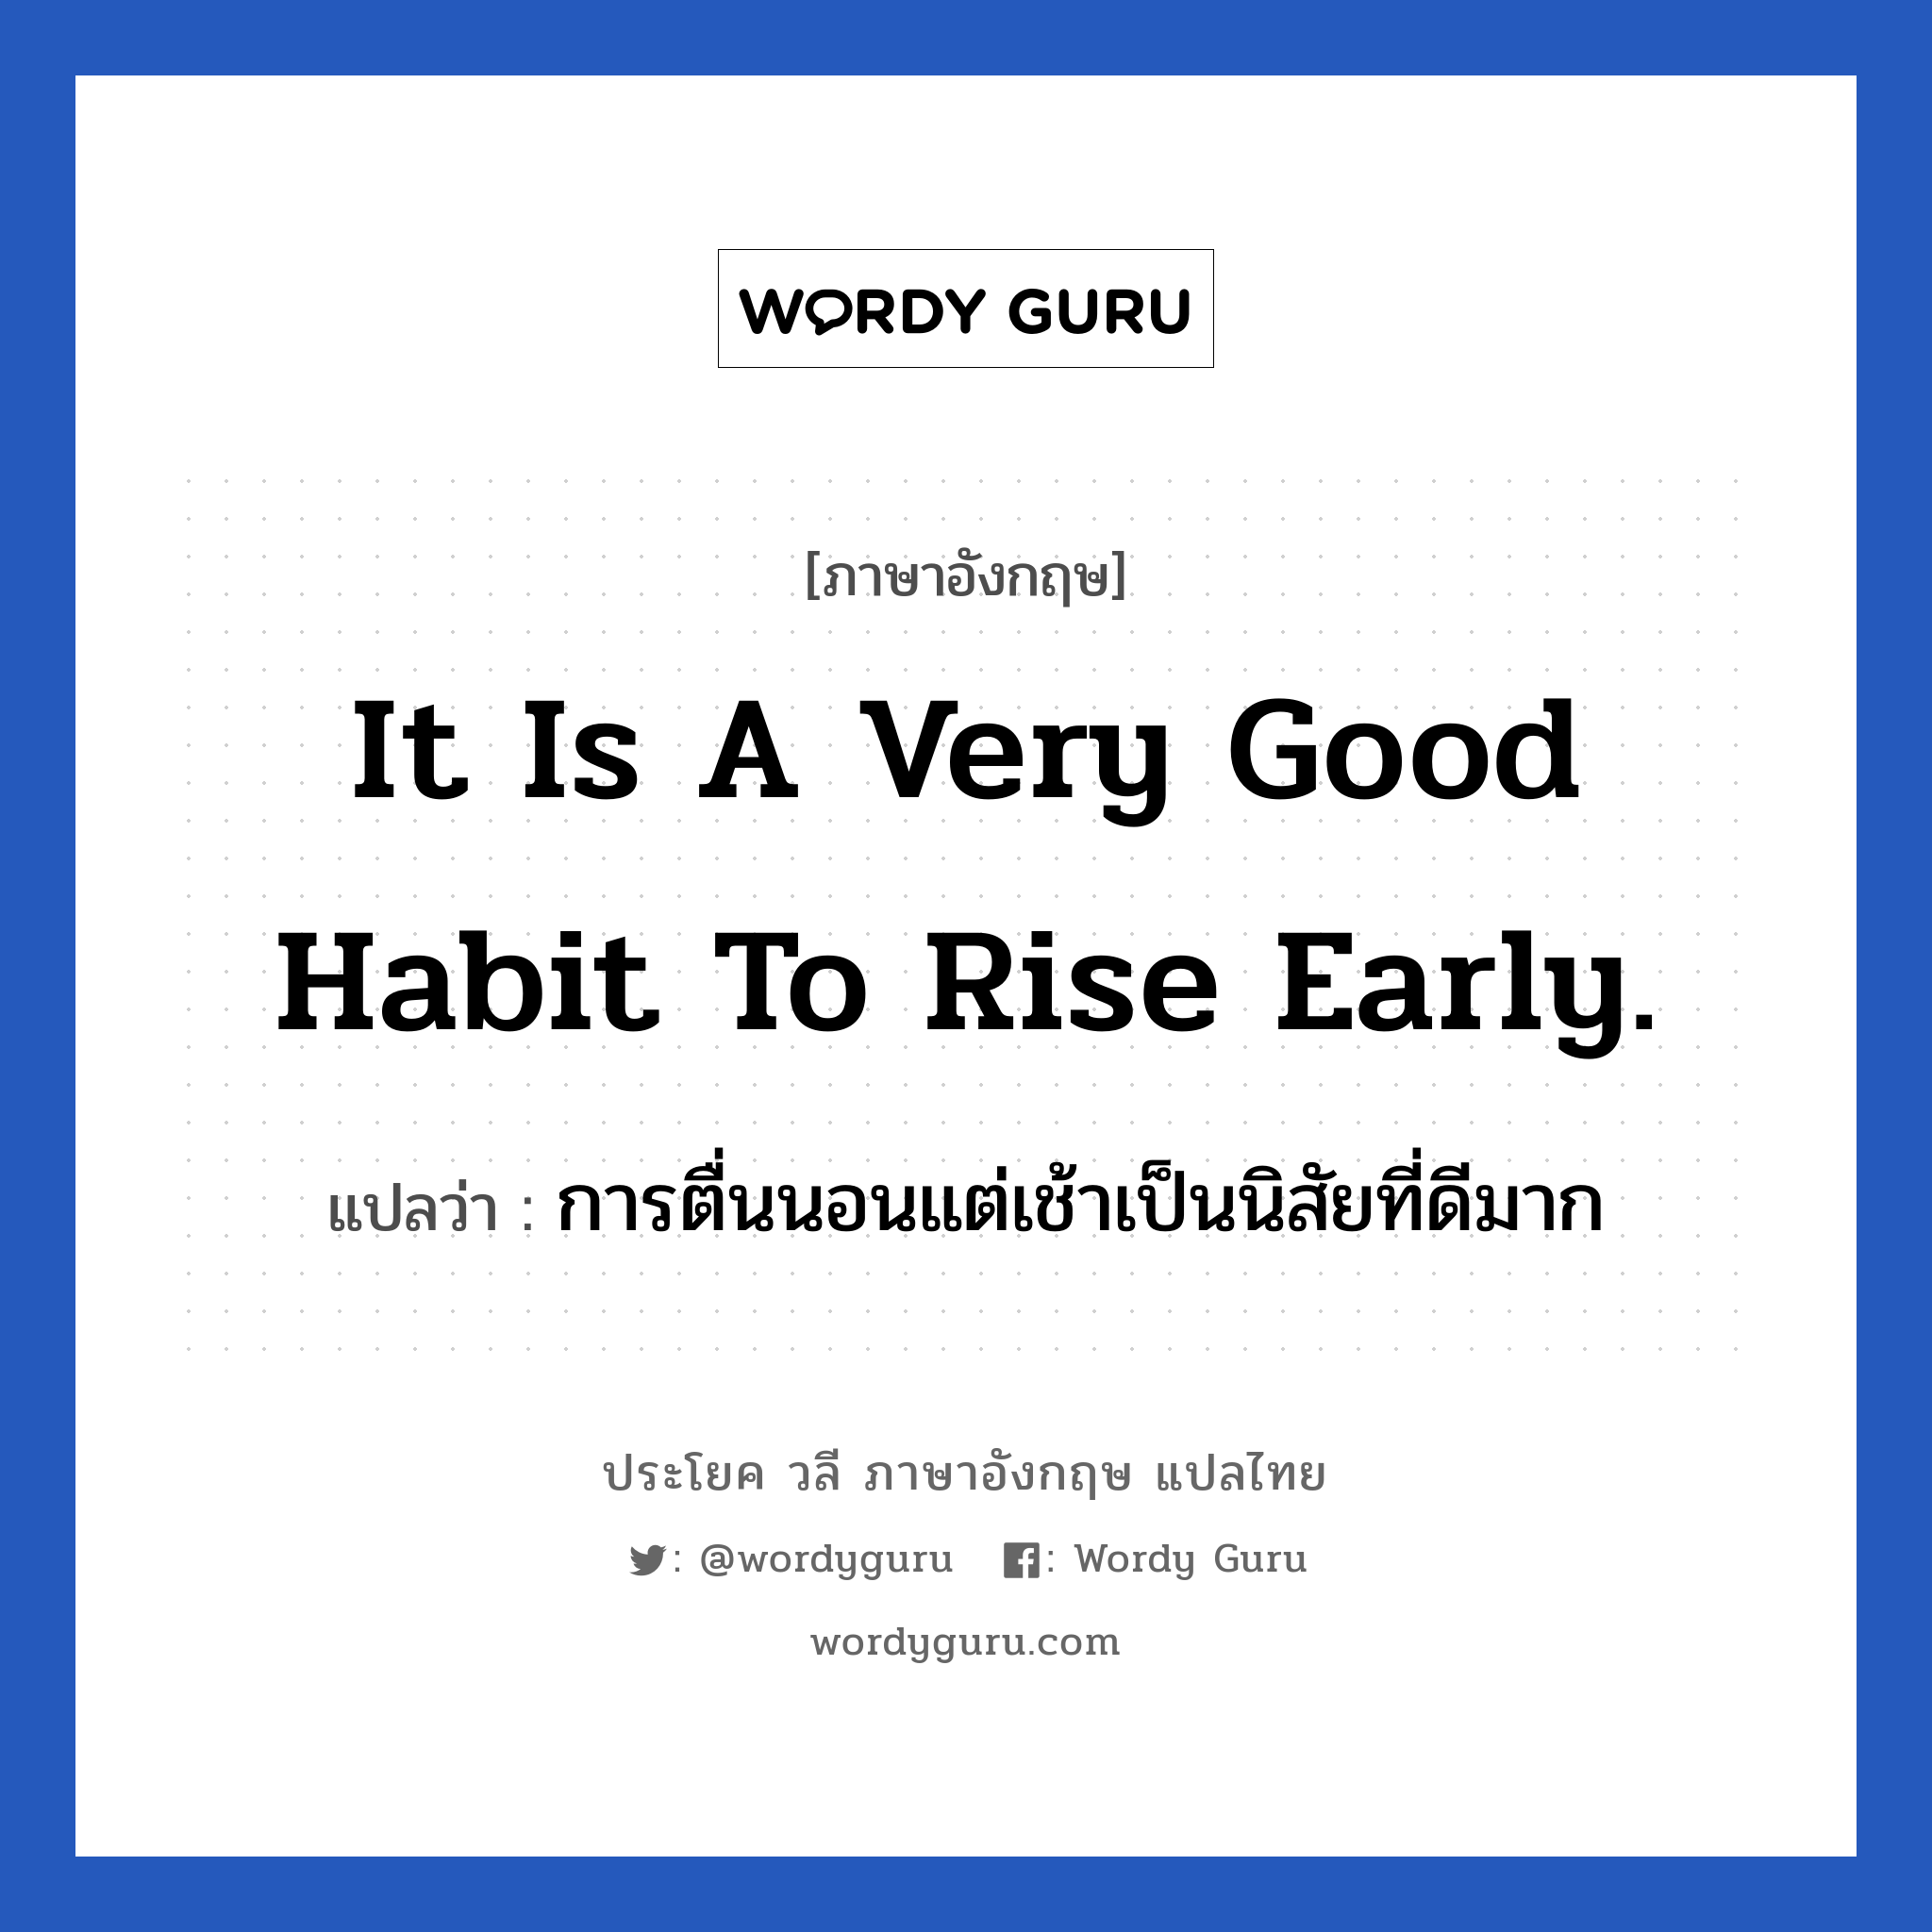 การตื่นนอนแต่เช้าเป็นนิสัยที่ดีมาก ภาษาอังกฤษ?, วลีภาษาอังกฤษ การตื่นนอนแต่เช้าเป็นนิสัยที่ดีมาก แปลว่า It is a very good habit to rise early. หมวด ในห้องนอน